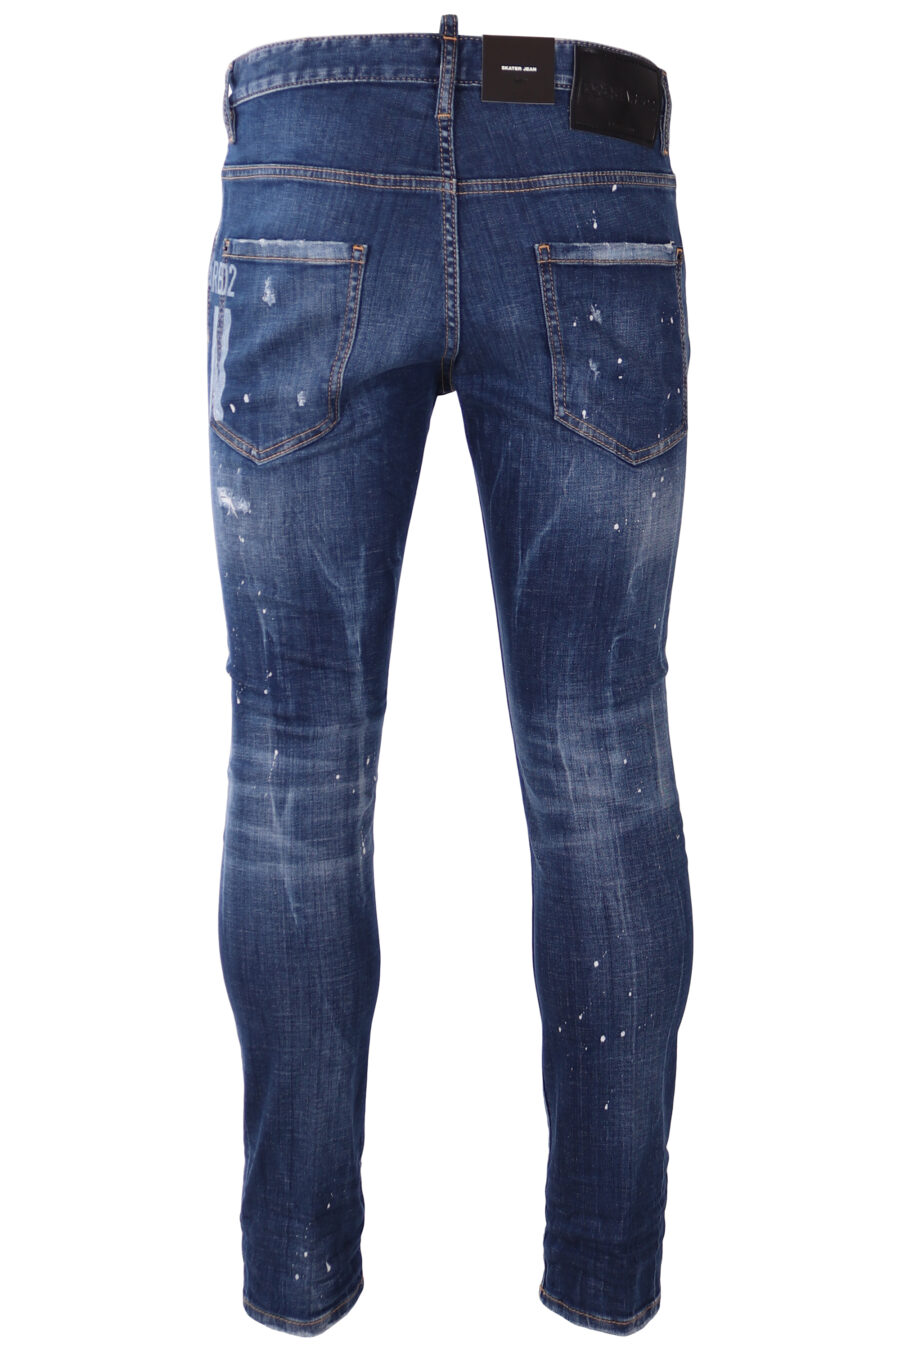 Pantalón vaquero "Skater" azul desgastado con logo "icon" blanco - IMG 1750